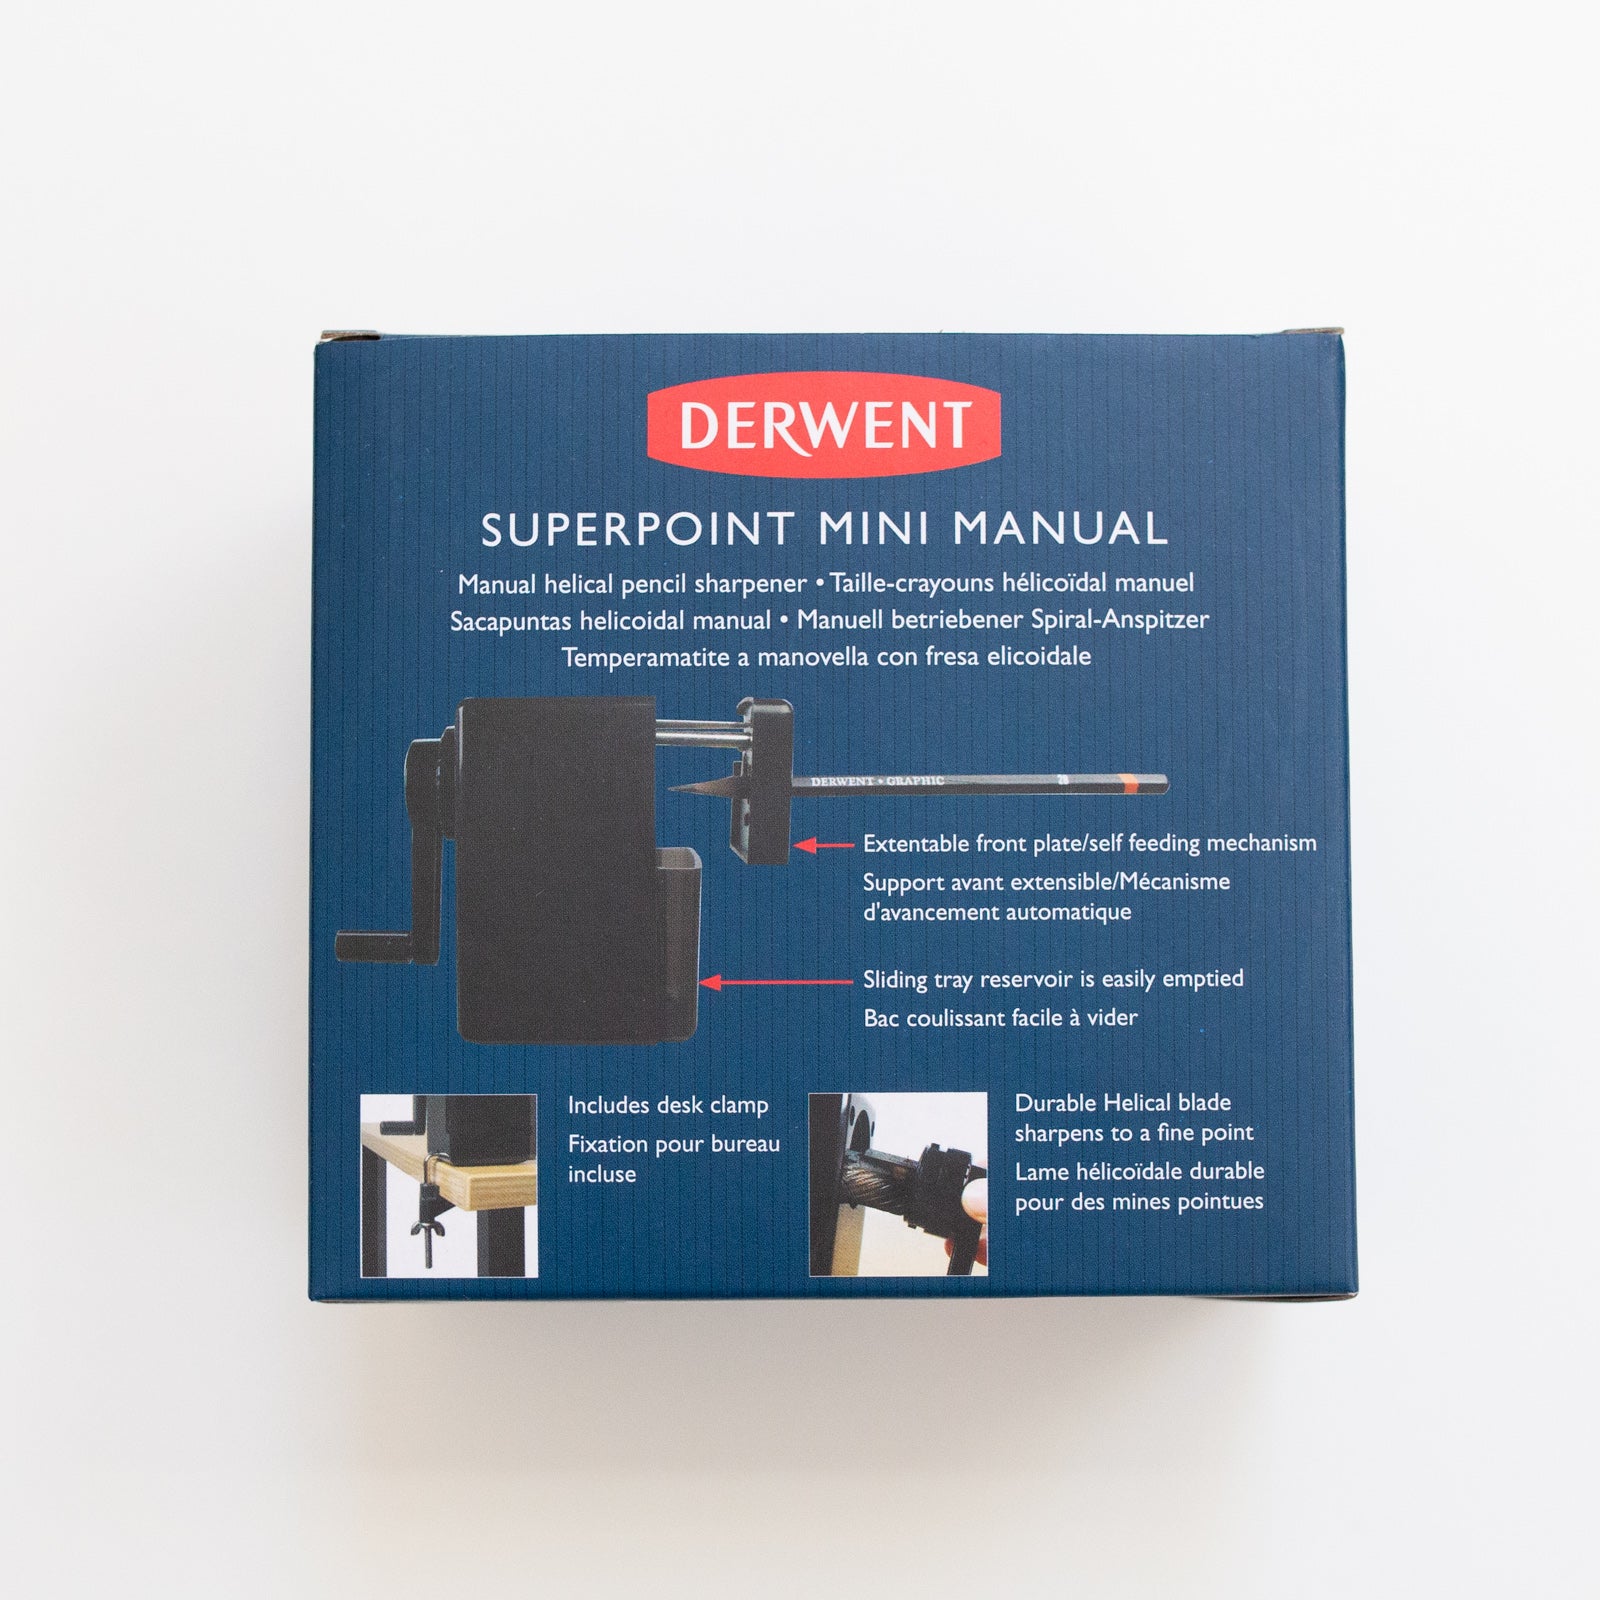 Derwent Superpoint mini manual